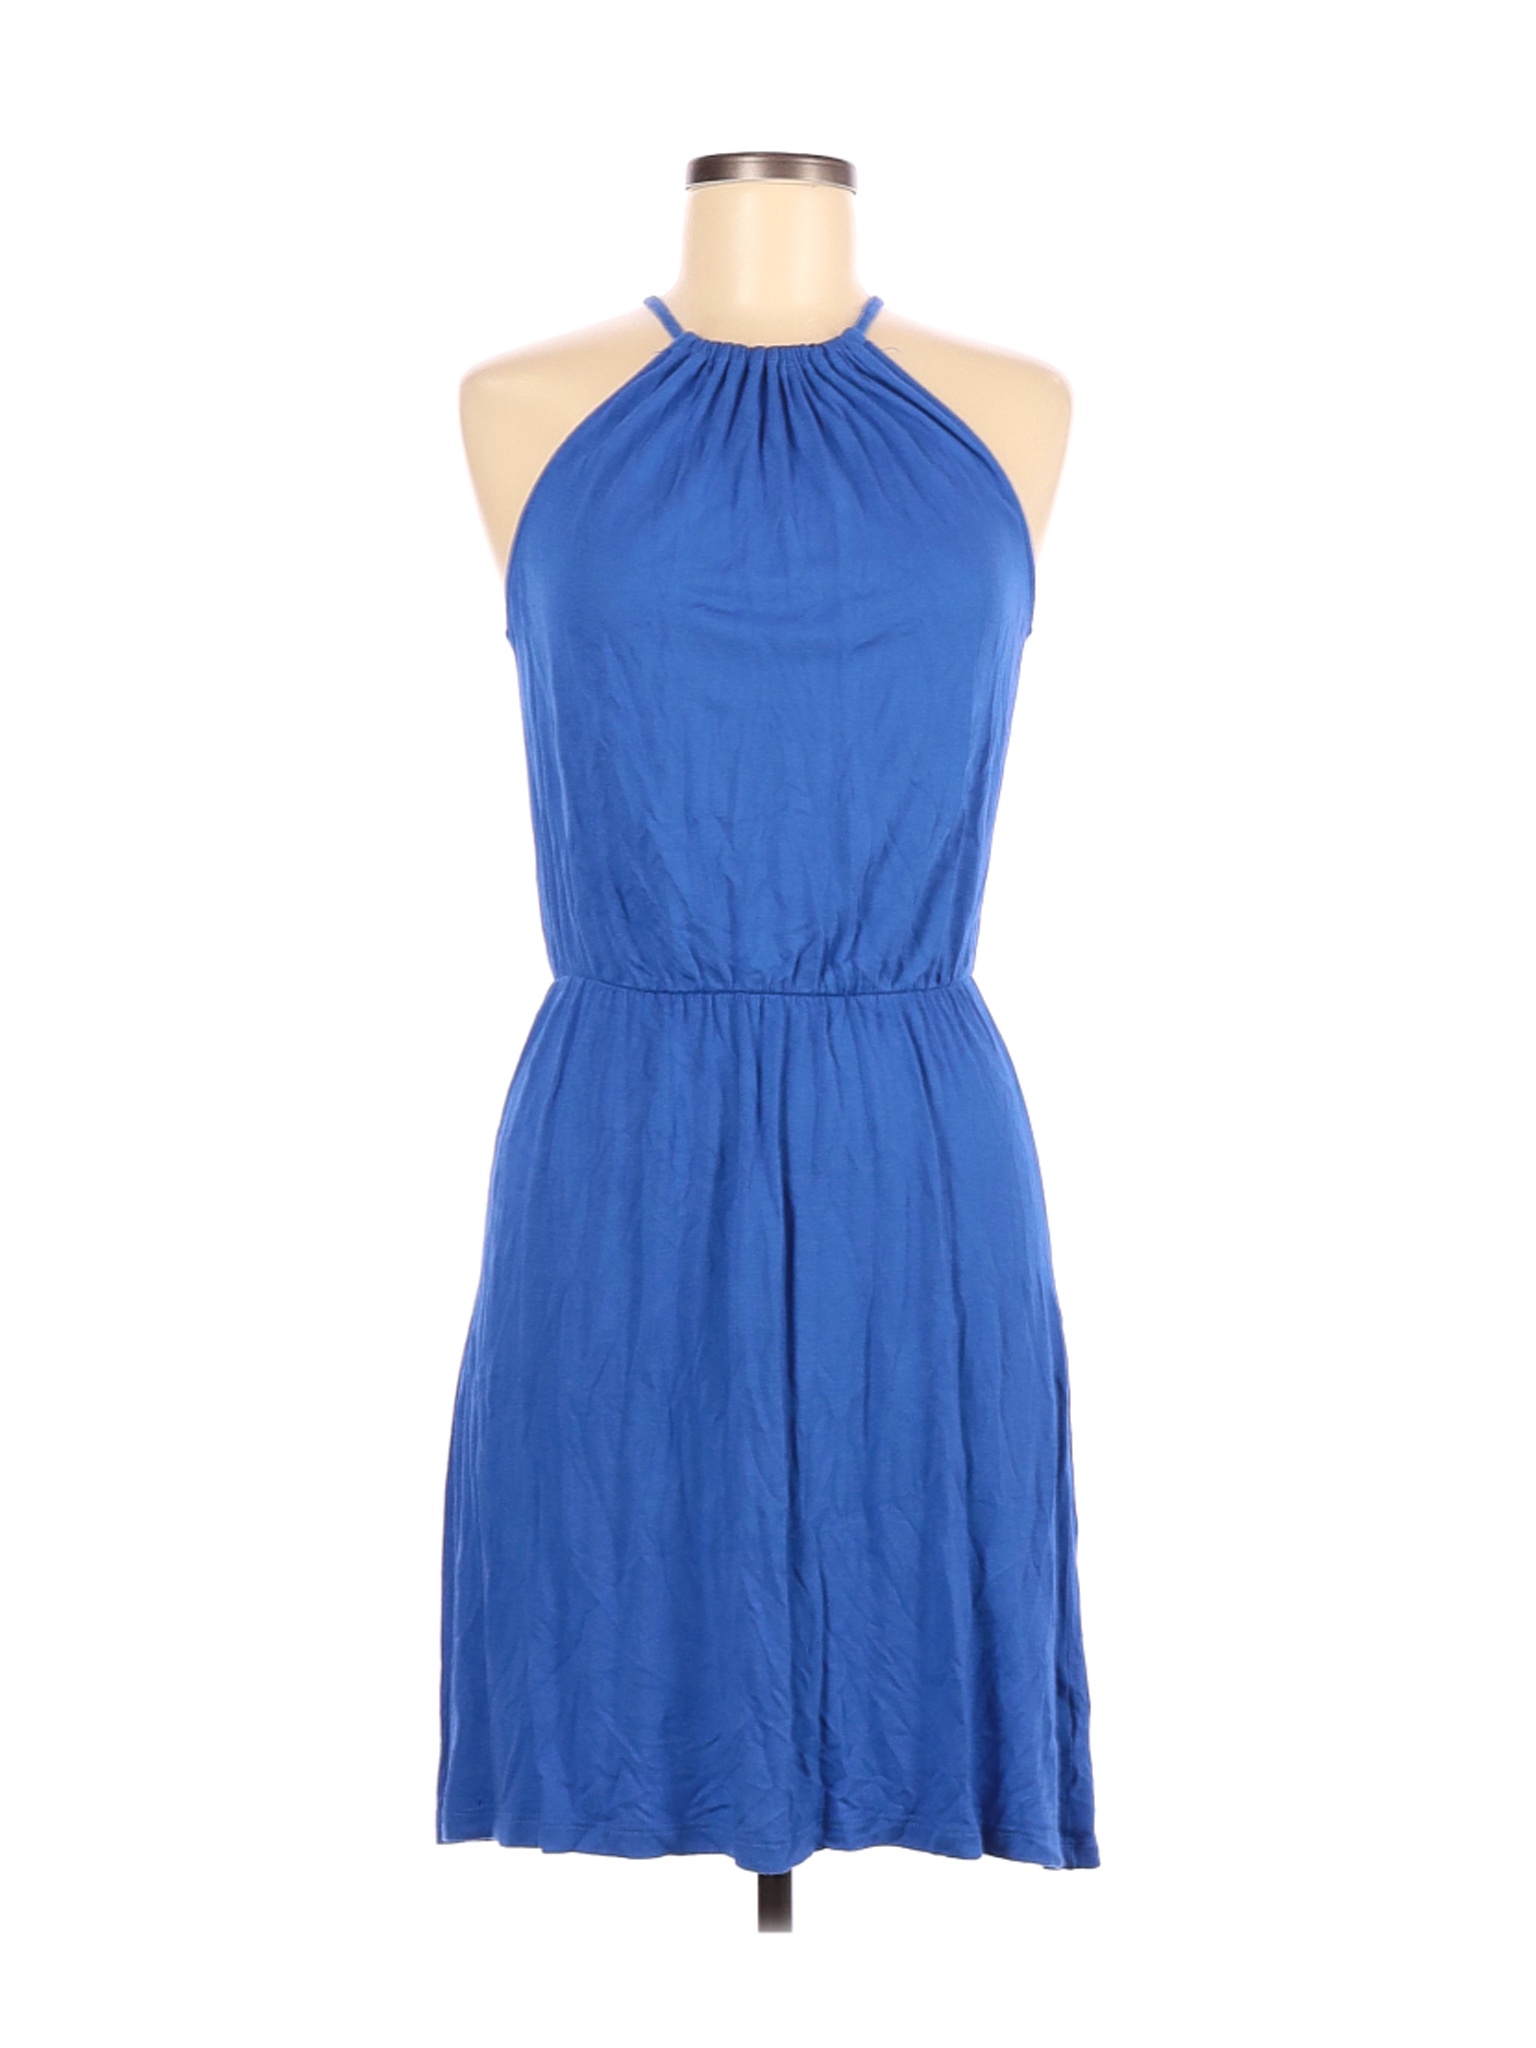 Old Navy Women Blue Casual Dress M | eBay